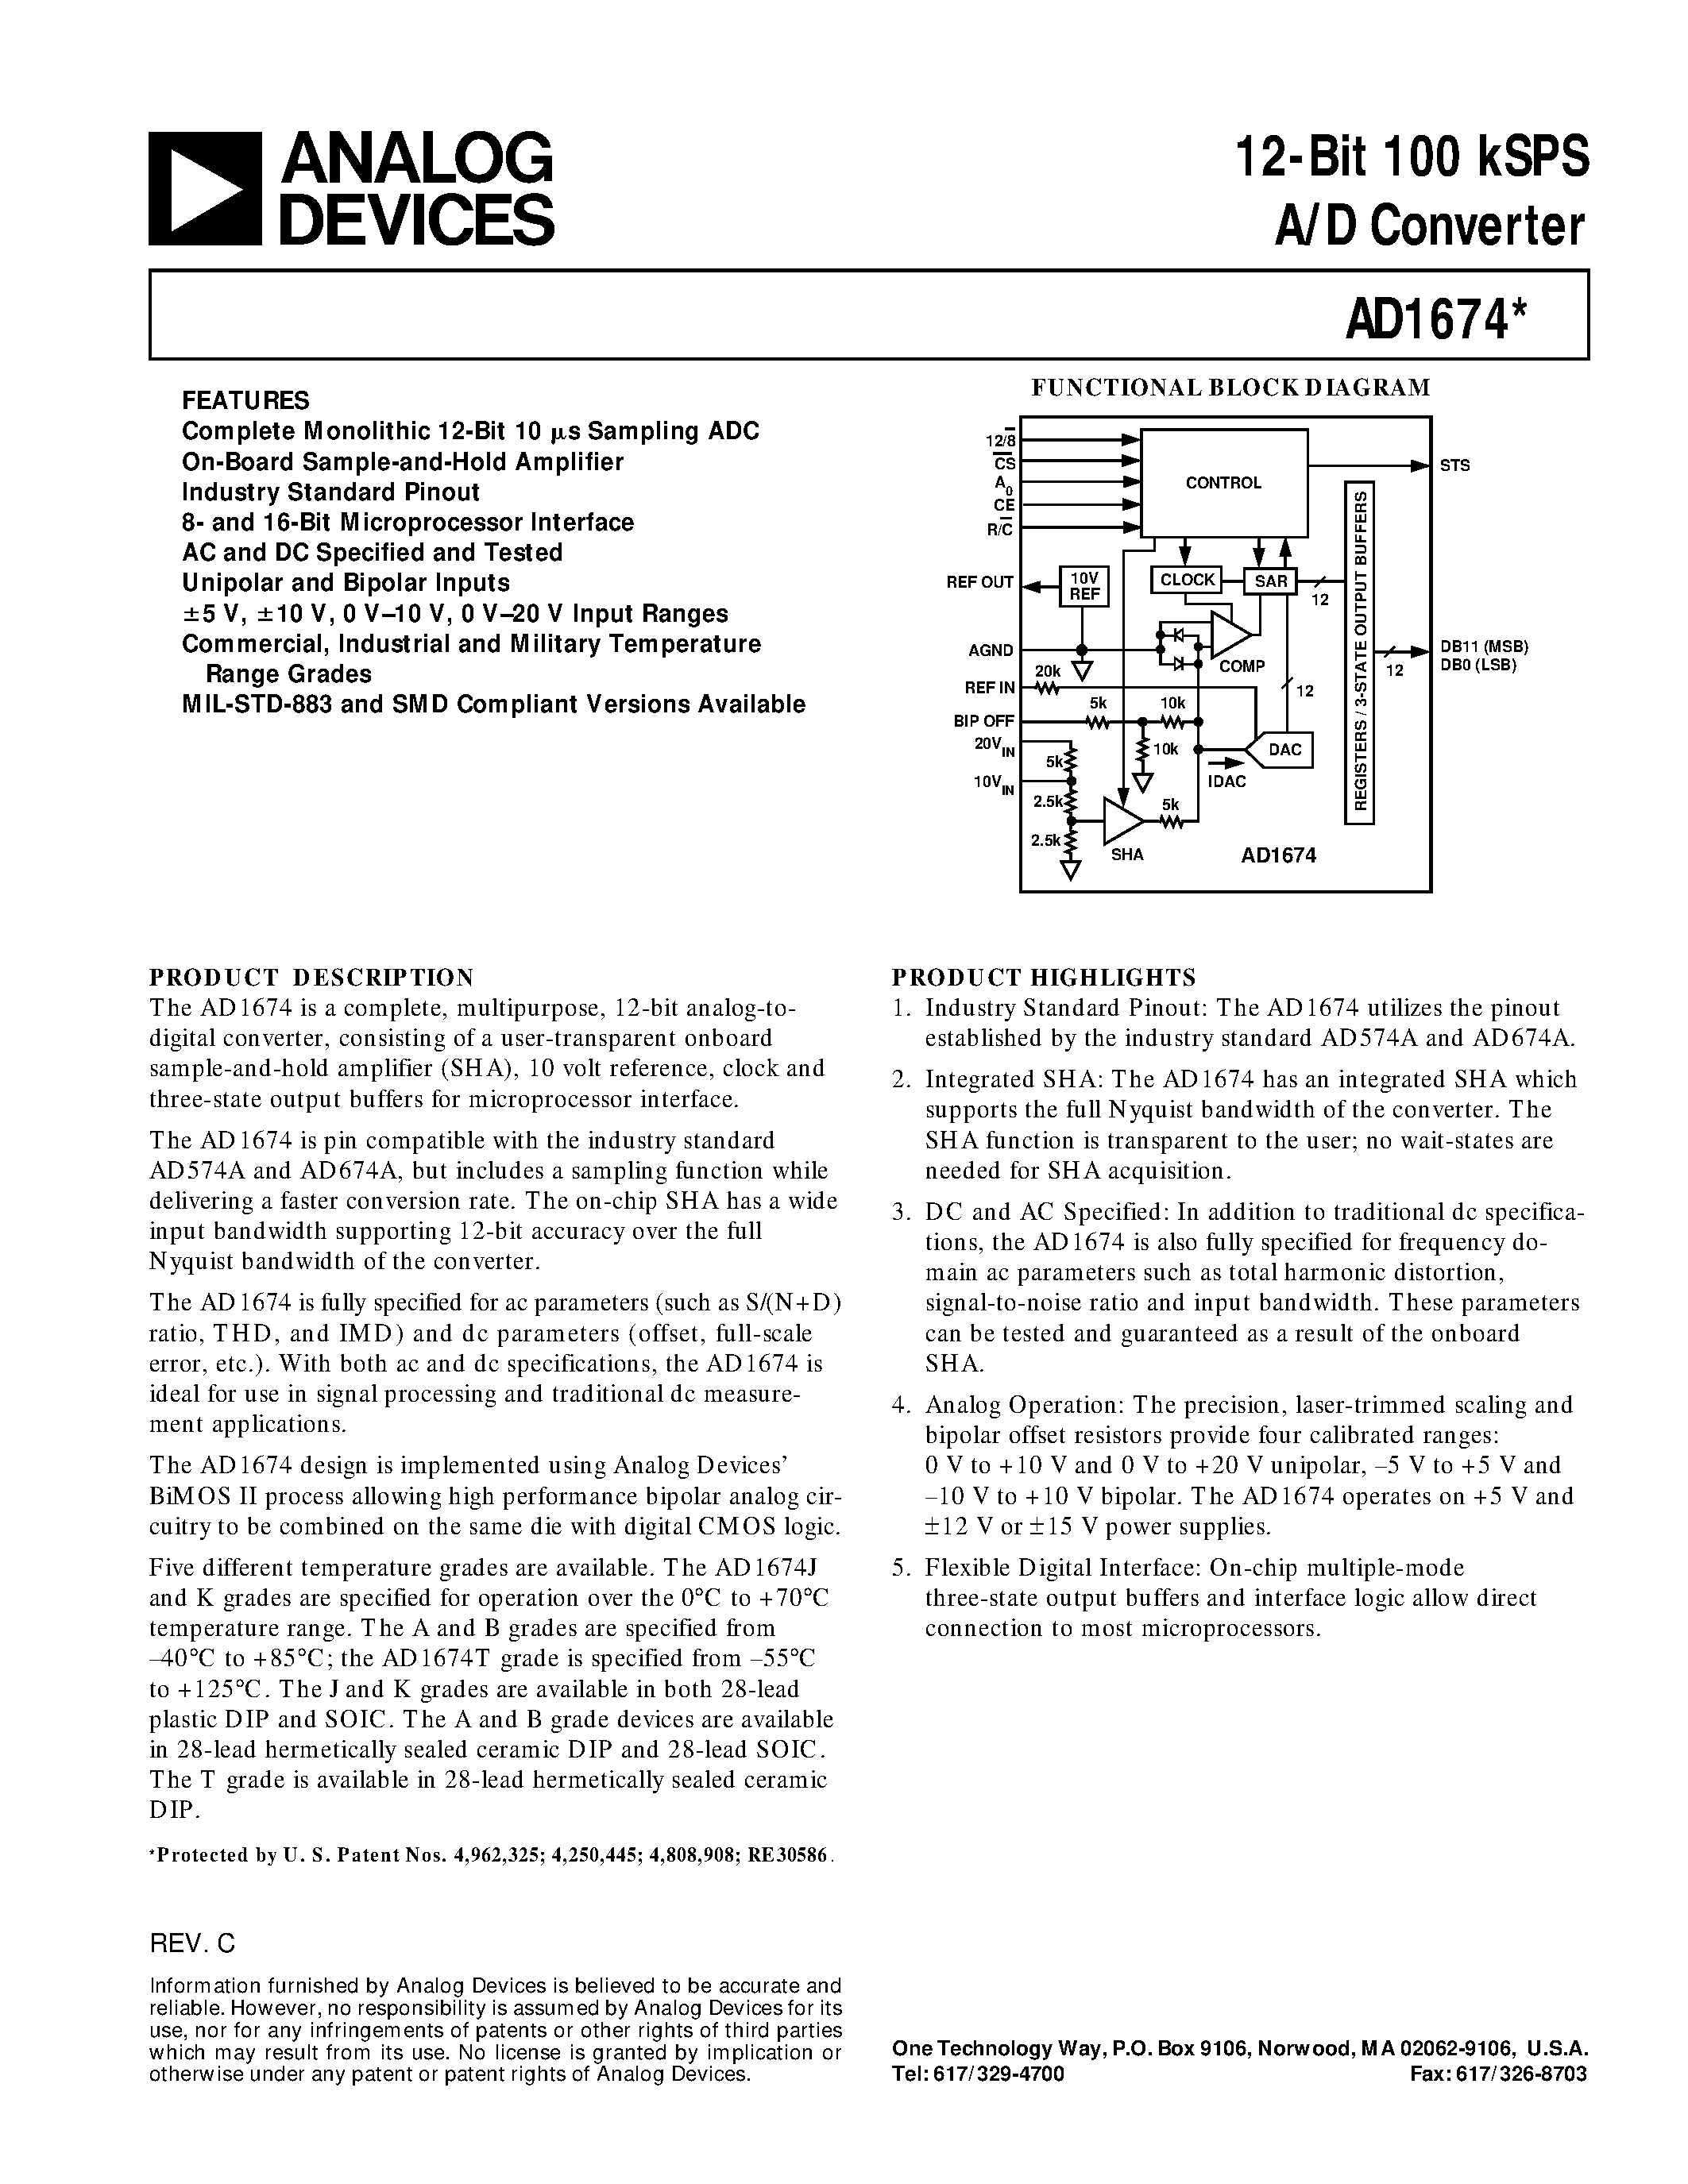 Datasheet AD1674 - 12-Bit 100 kSPS A/D Converter page 1